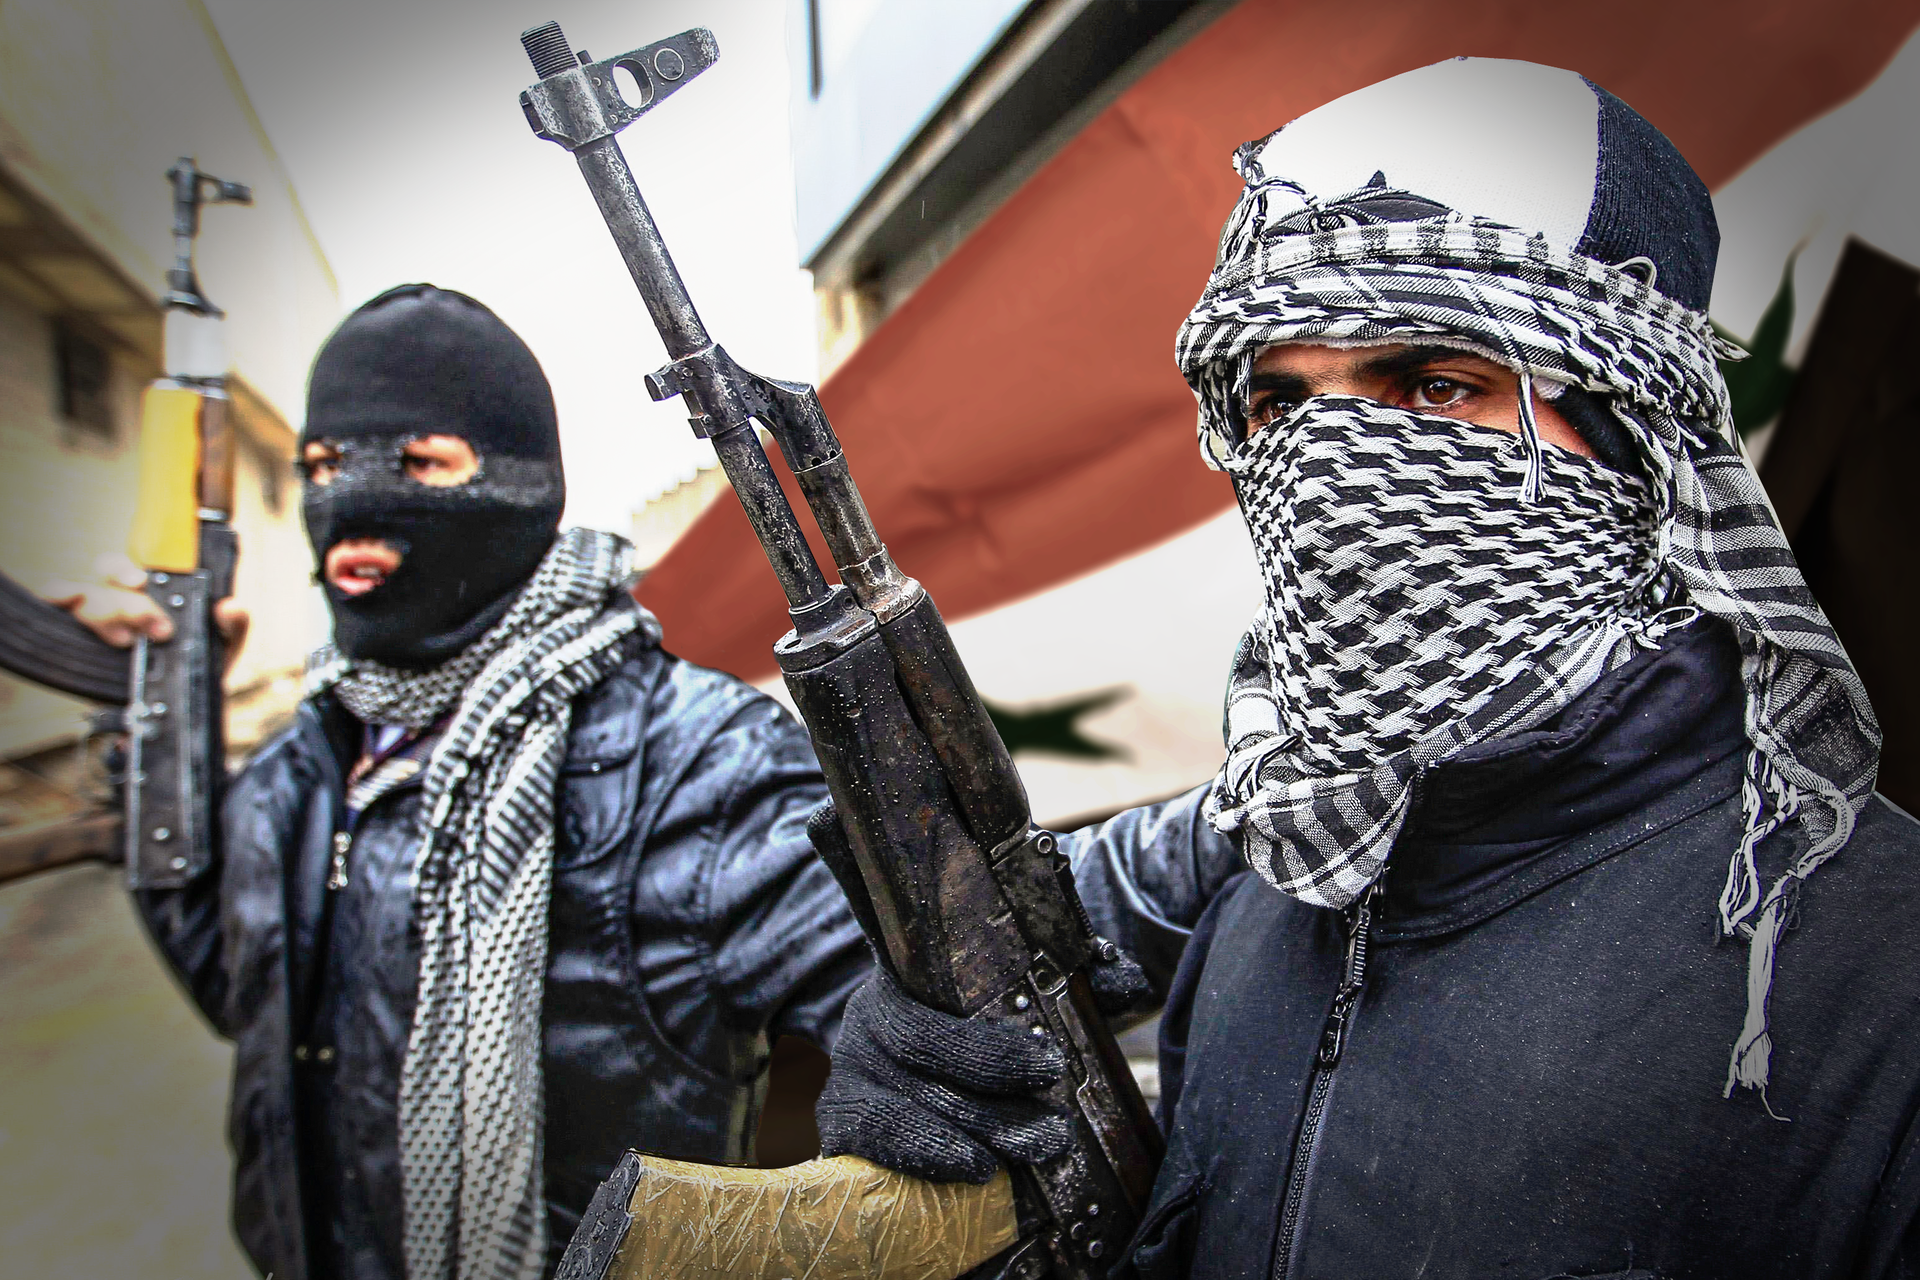 Kolorowe zdjęcie przedstawia dwóch mężczyzn stojących na ulicy. Mężczyźni mają zakryte twarze. Mężczyzna po lewej ma czarną kominiarkę. Mężczyzna po prawej białą czapkę i kraciastą chustę zawiązaną wokół twarzy. W prawej ręce każdy trzyma karabin. Karabin skierowany lufą w górę. W tle, za mężczyznami, flaga Syrii. Po lewej budynki mieszkalne.